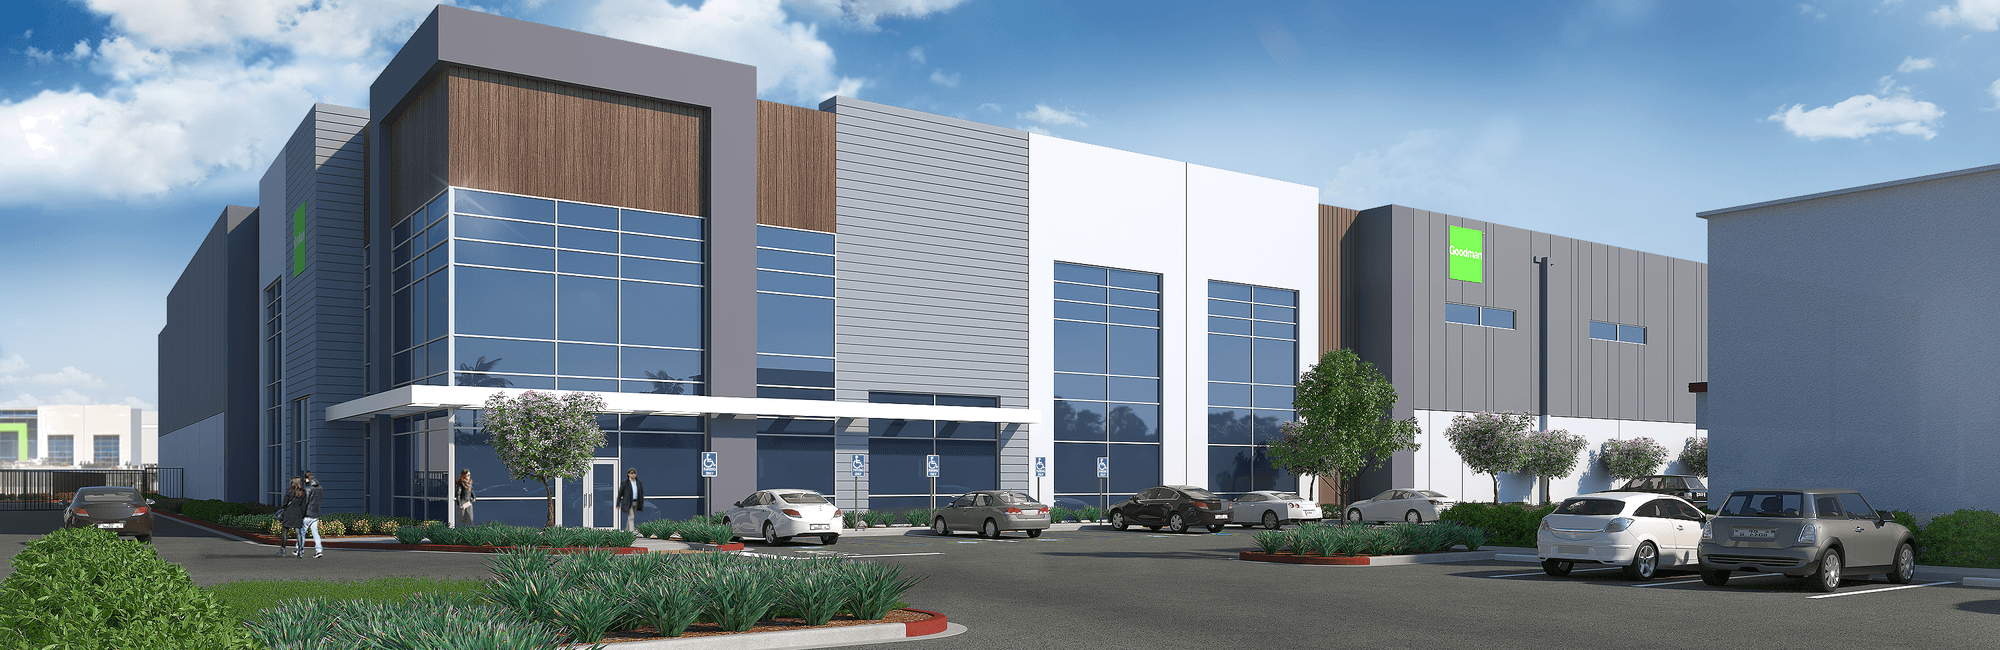 Goodman Santa Fe Springs Warehouse exterior rendering cgi